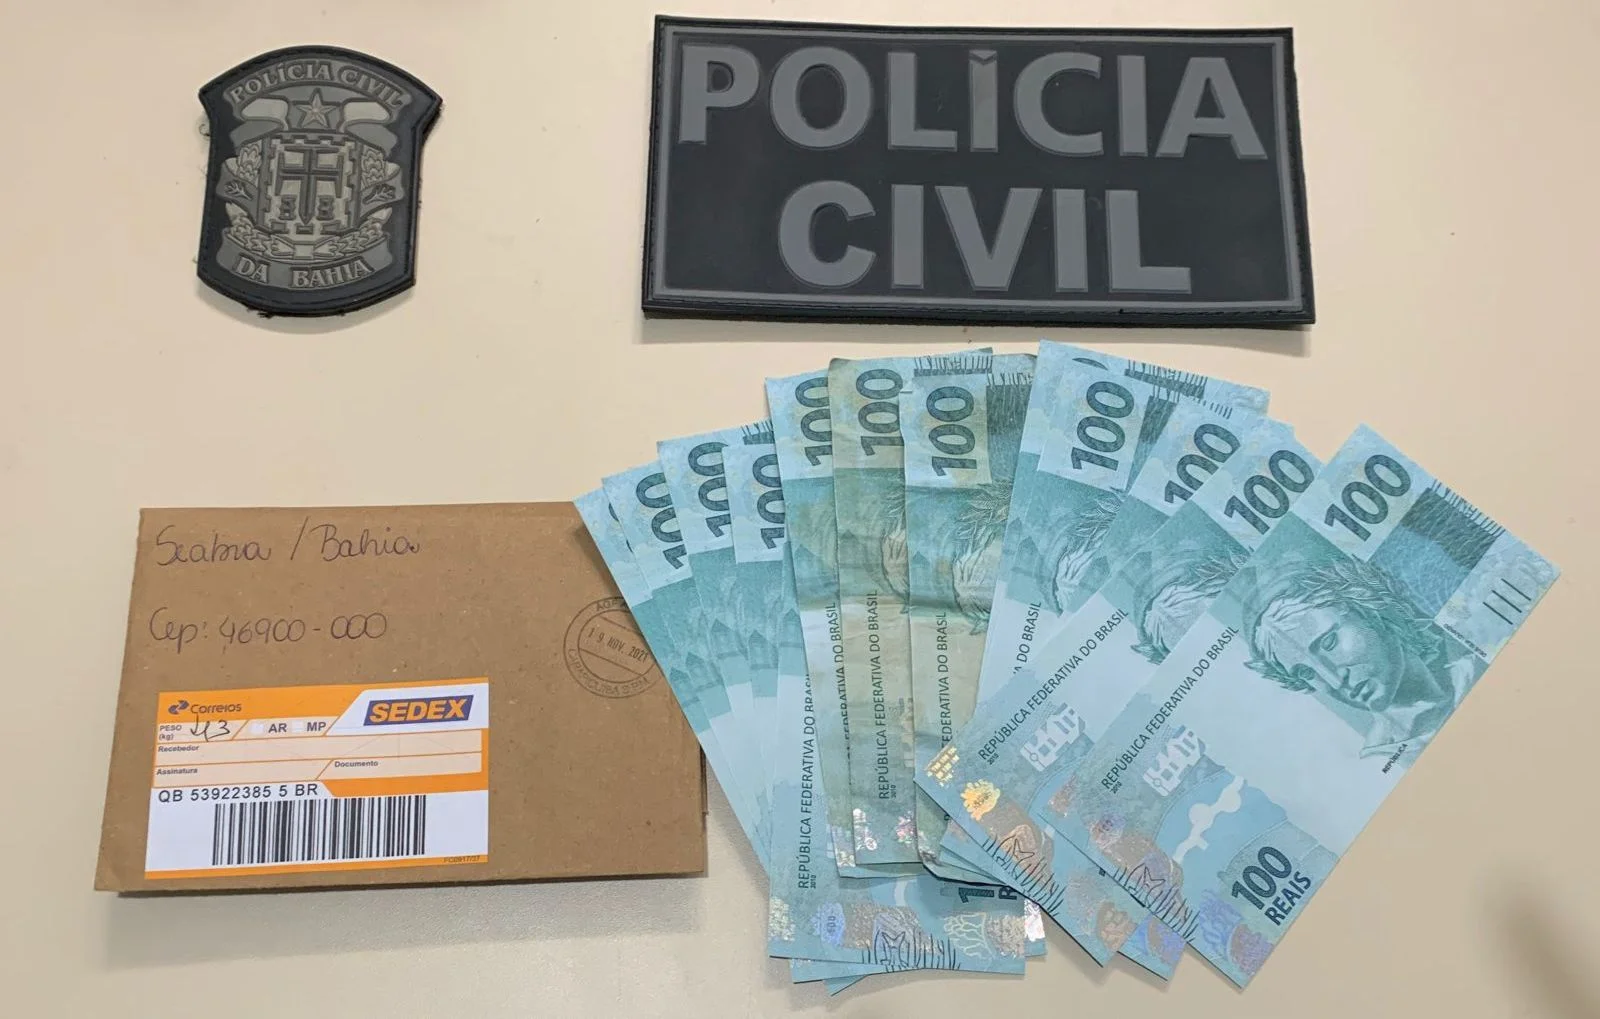 Polícia prendeu R$1,3 mil em dinheiro falso no interior da Bahia